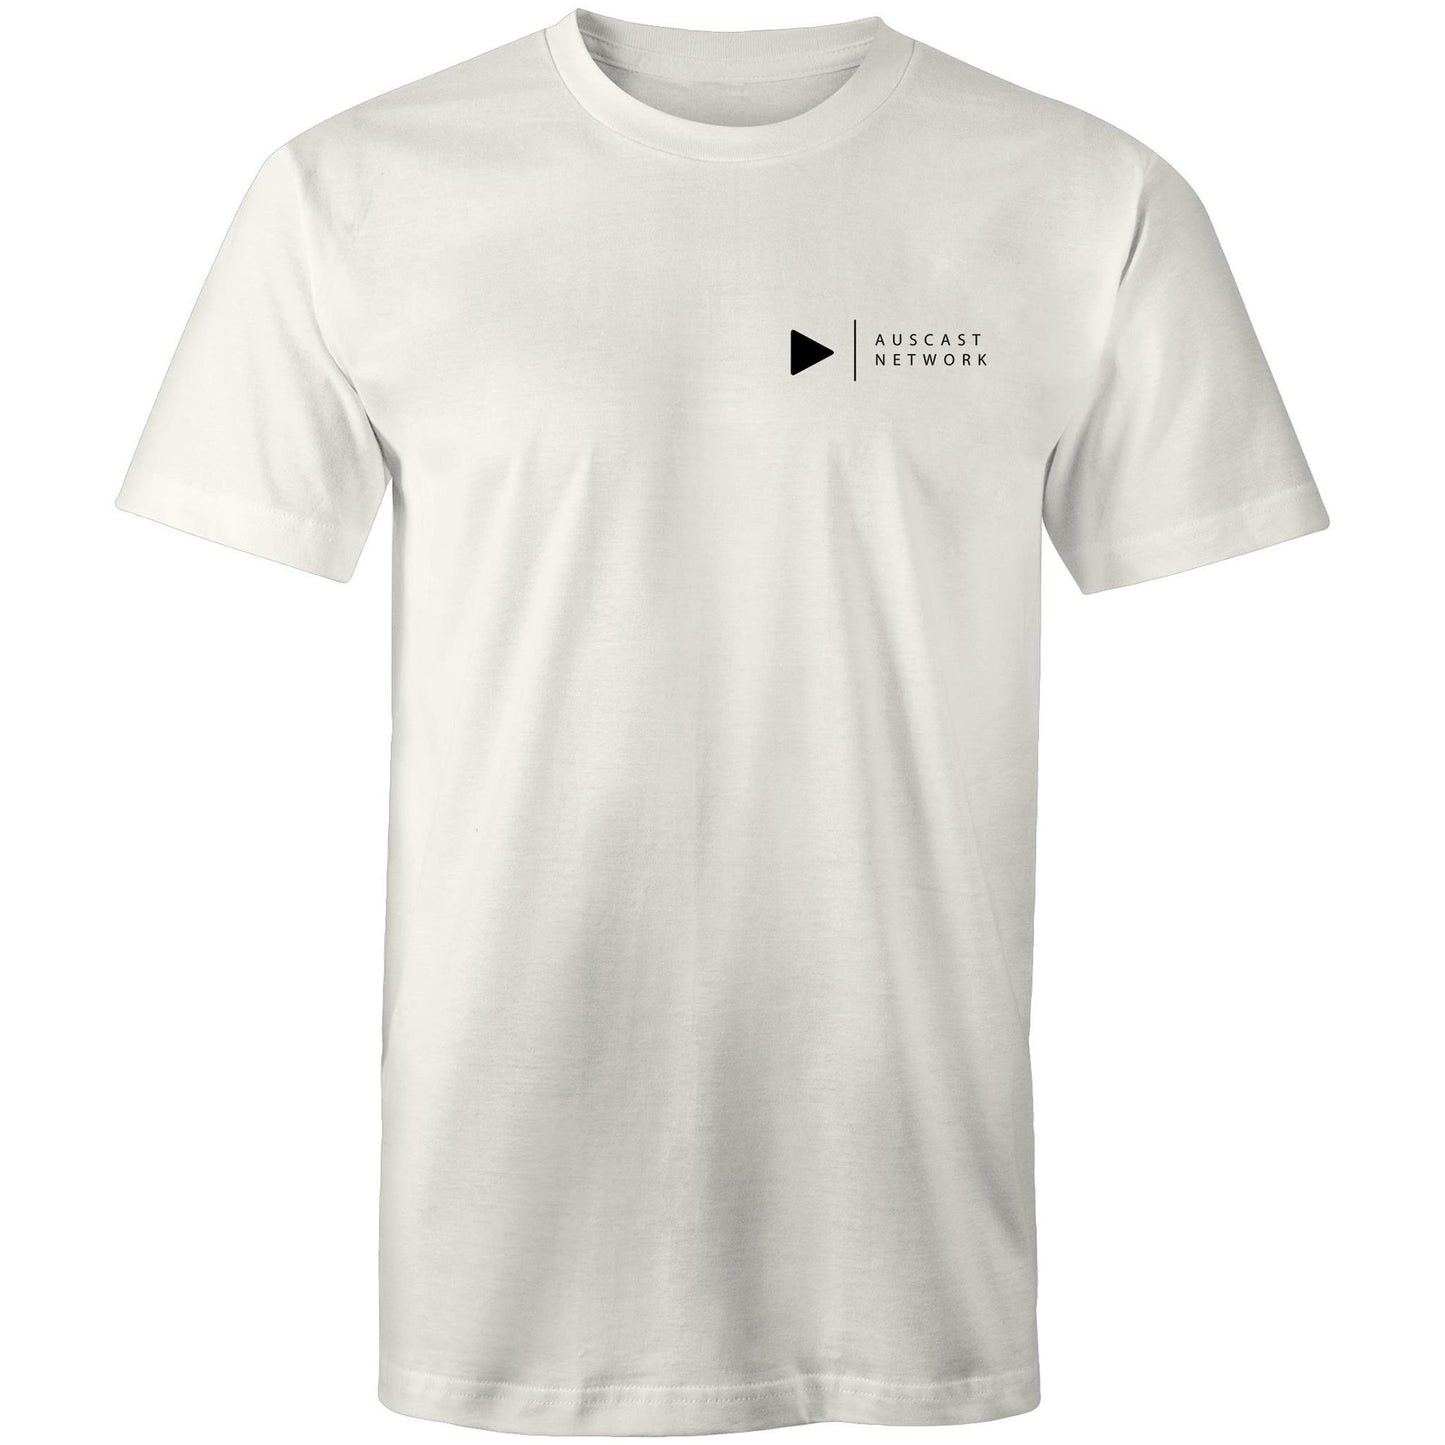 Auscast Network (black pocket logo) - AS Colour Staple - Mens T-Shirt